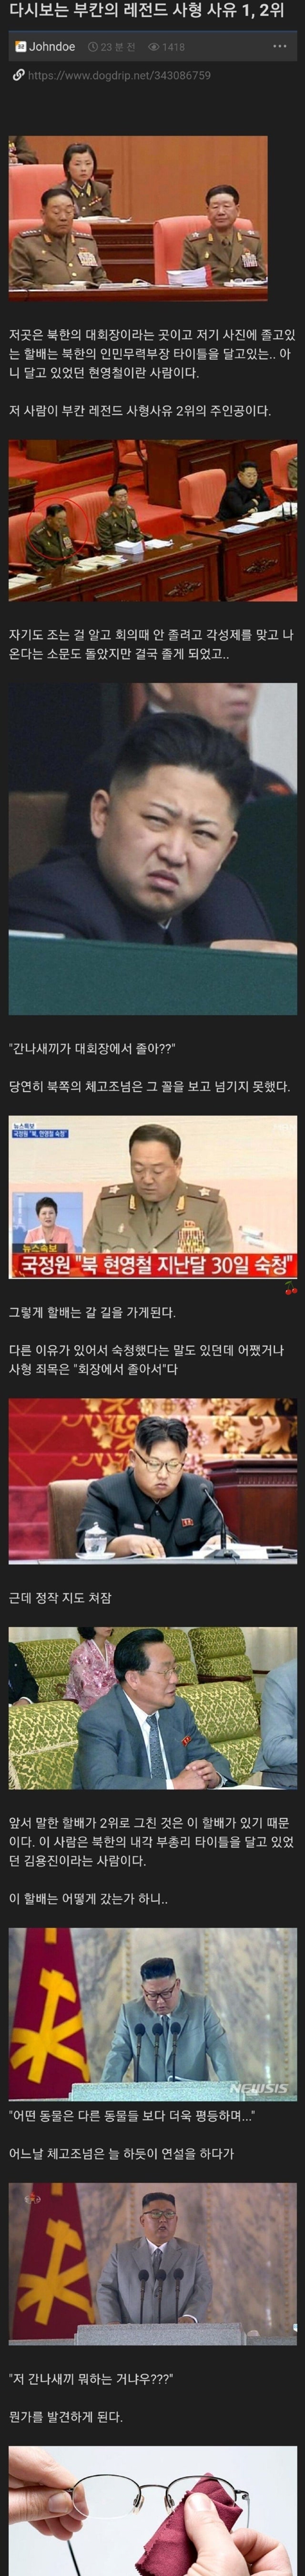 북한 총살원인 1위와 2위